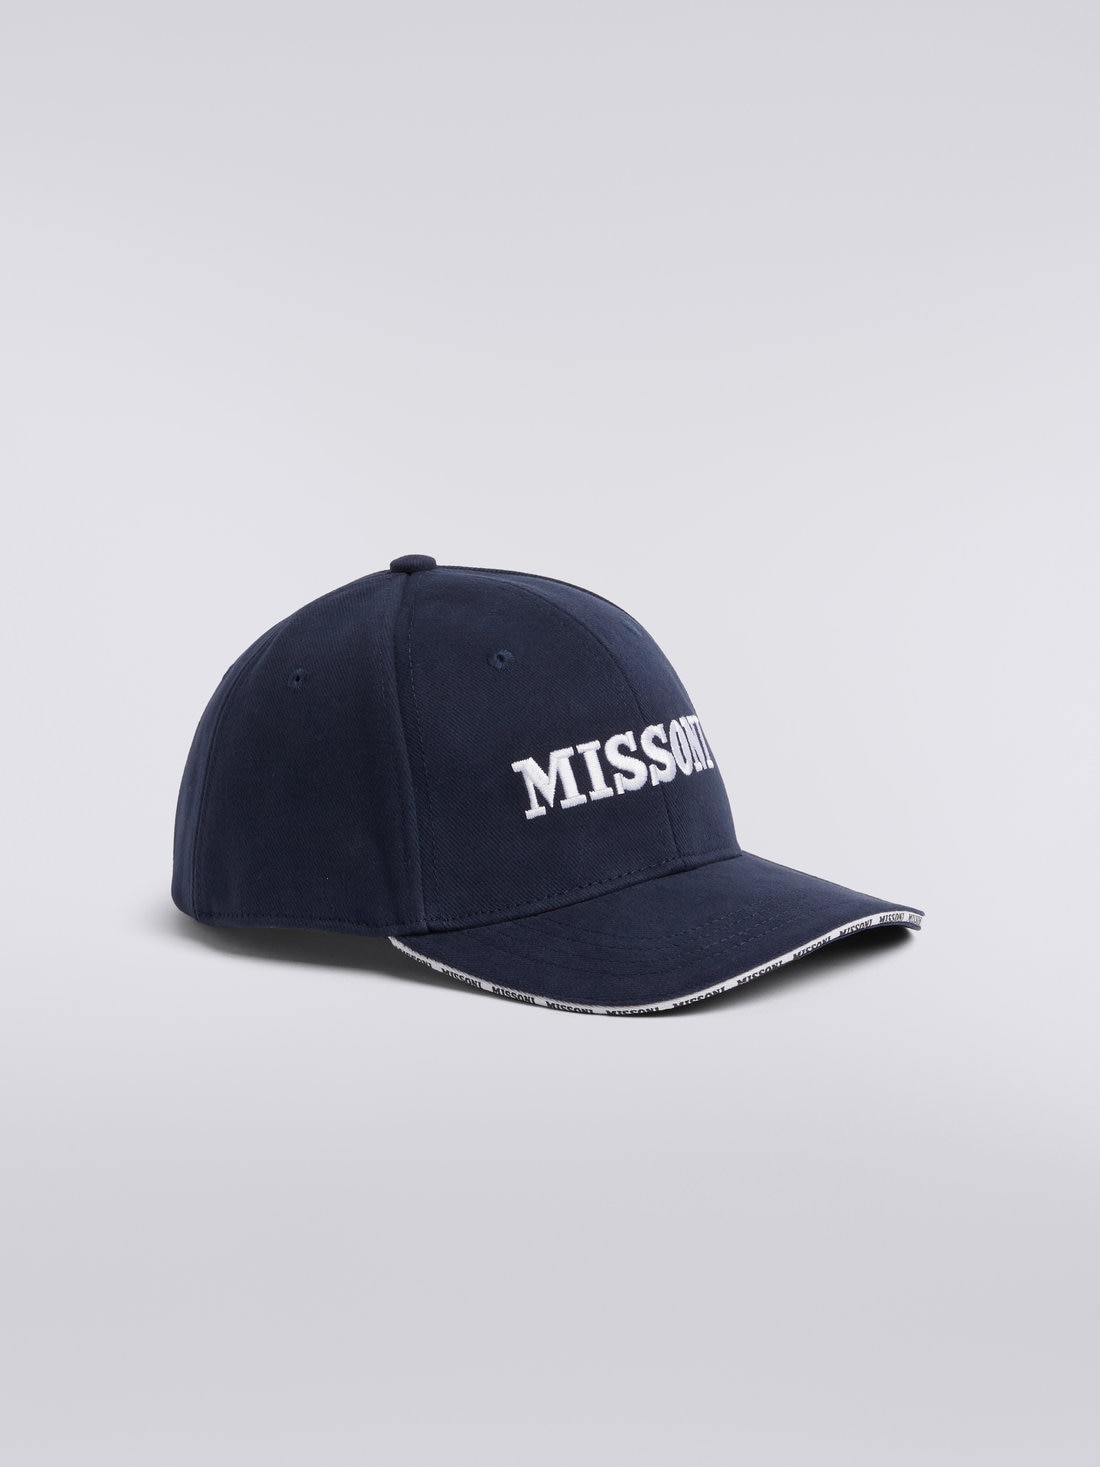 Cotton baseball cap with logo, Multicoloured  - 8053147023175 - 1